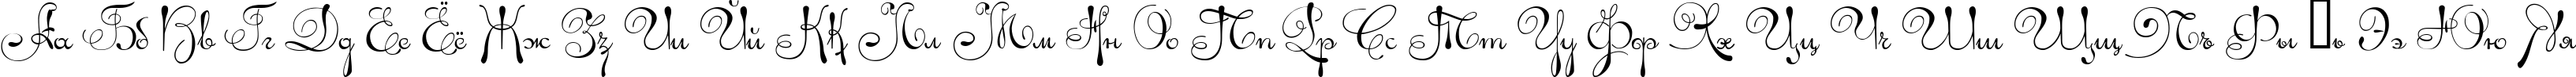 Пример написания русского алфавита шрифтом Ariadna script